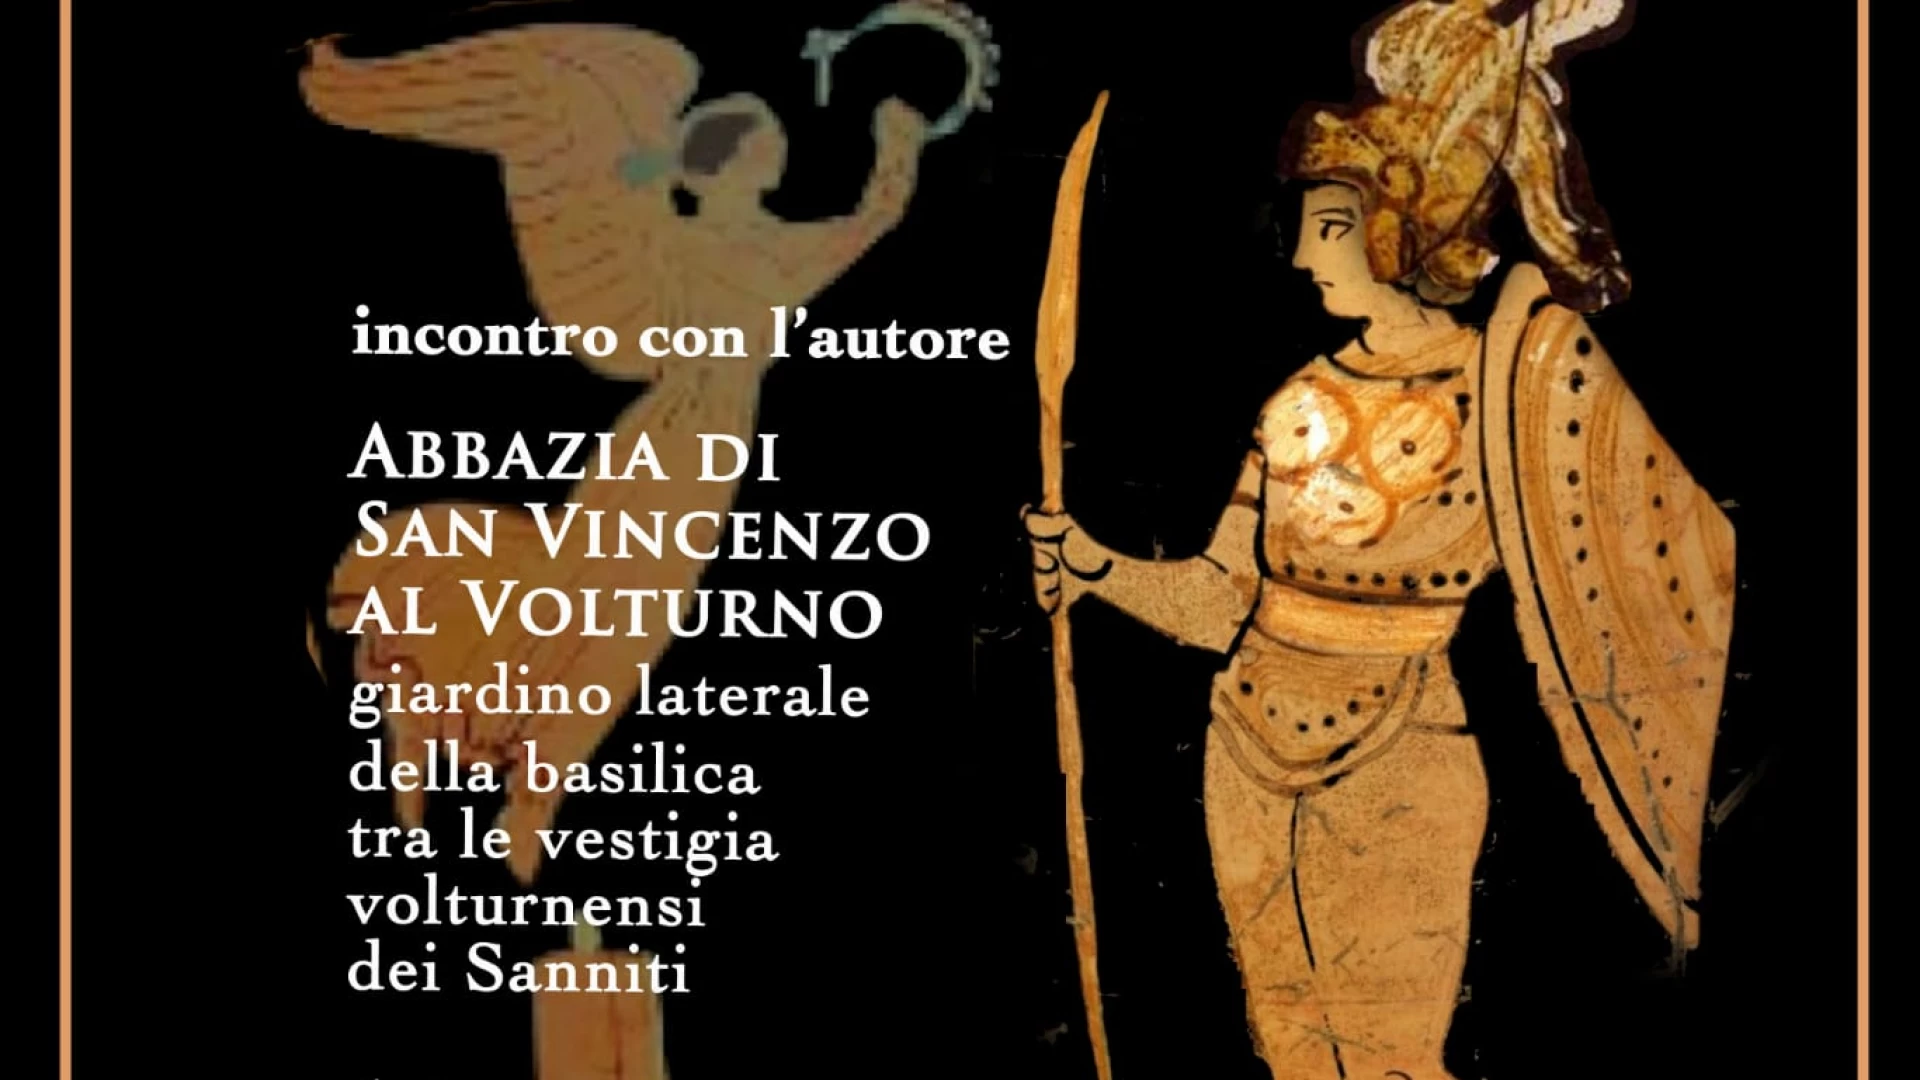 Abbazia Di San Vincenzo al Volturno: il 6 agosto alle ore 18 la presentazione del volume "L'uomo Sannita" di Gianfranco De Benedittis